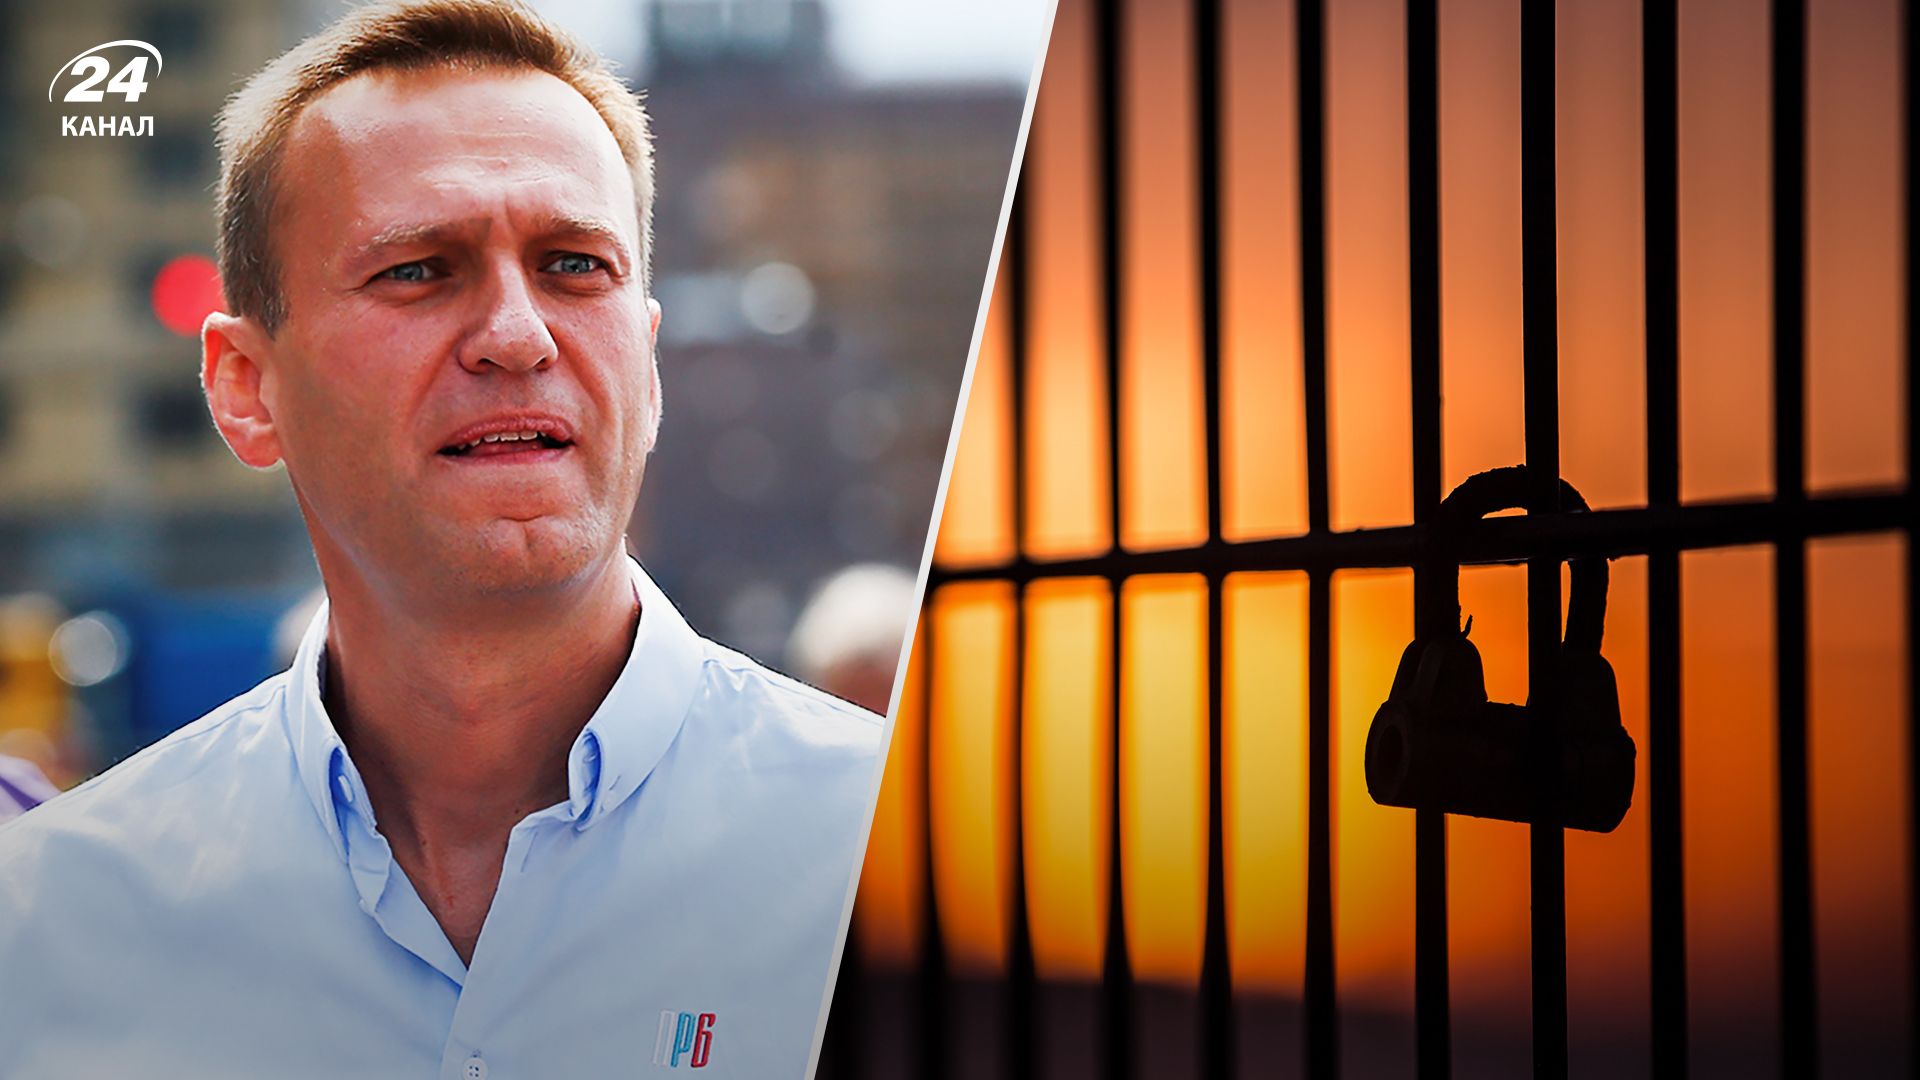 Олексія Навального нарешті знайшли у колонії - де він та в якому стані